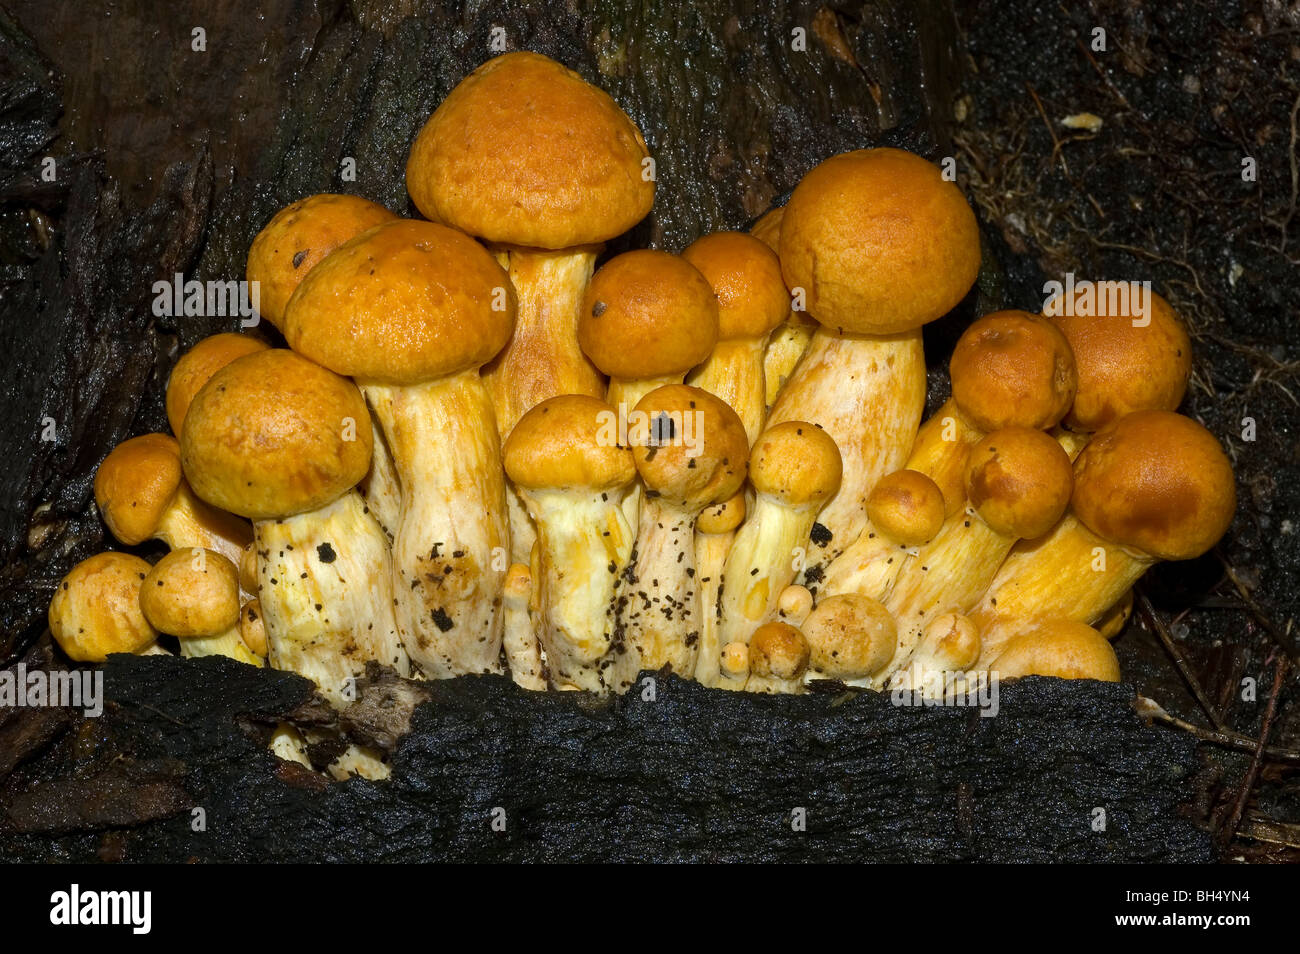 Laughing gym or Laughing Jim mushrooms (Gymnopilus spectabilis) Stock Photo